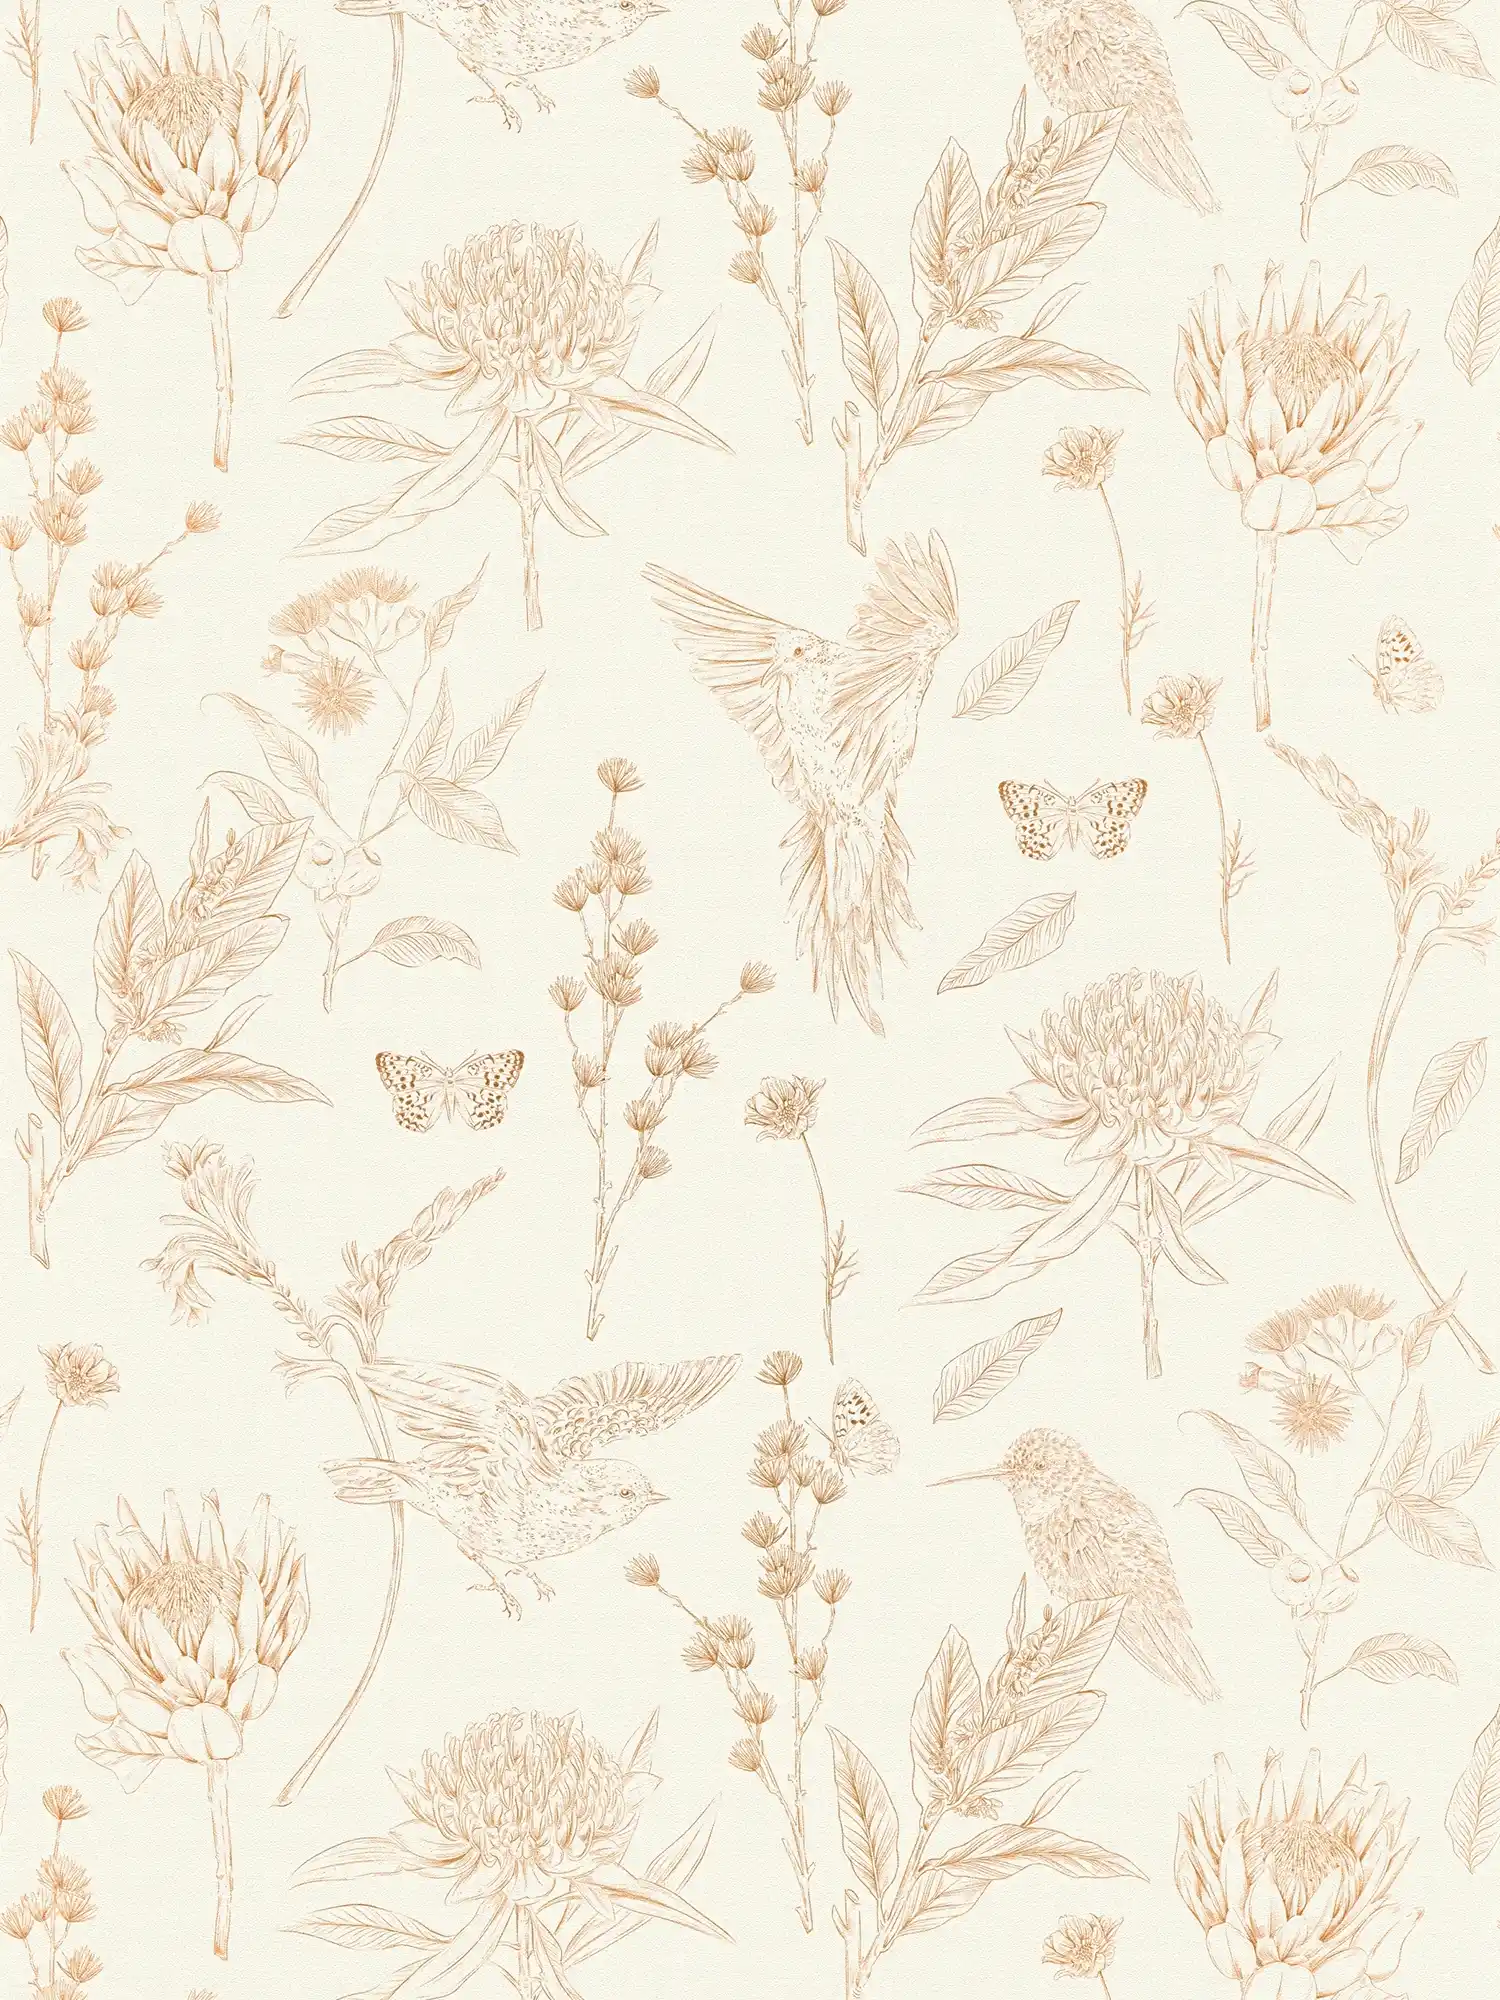         Papel pintado Floral con hojas y animales textura mate - blanco, marrón, beige
    